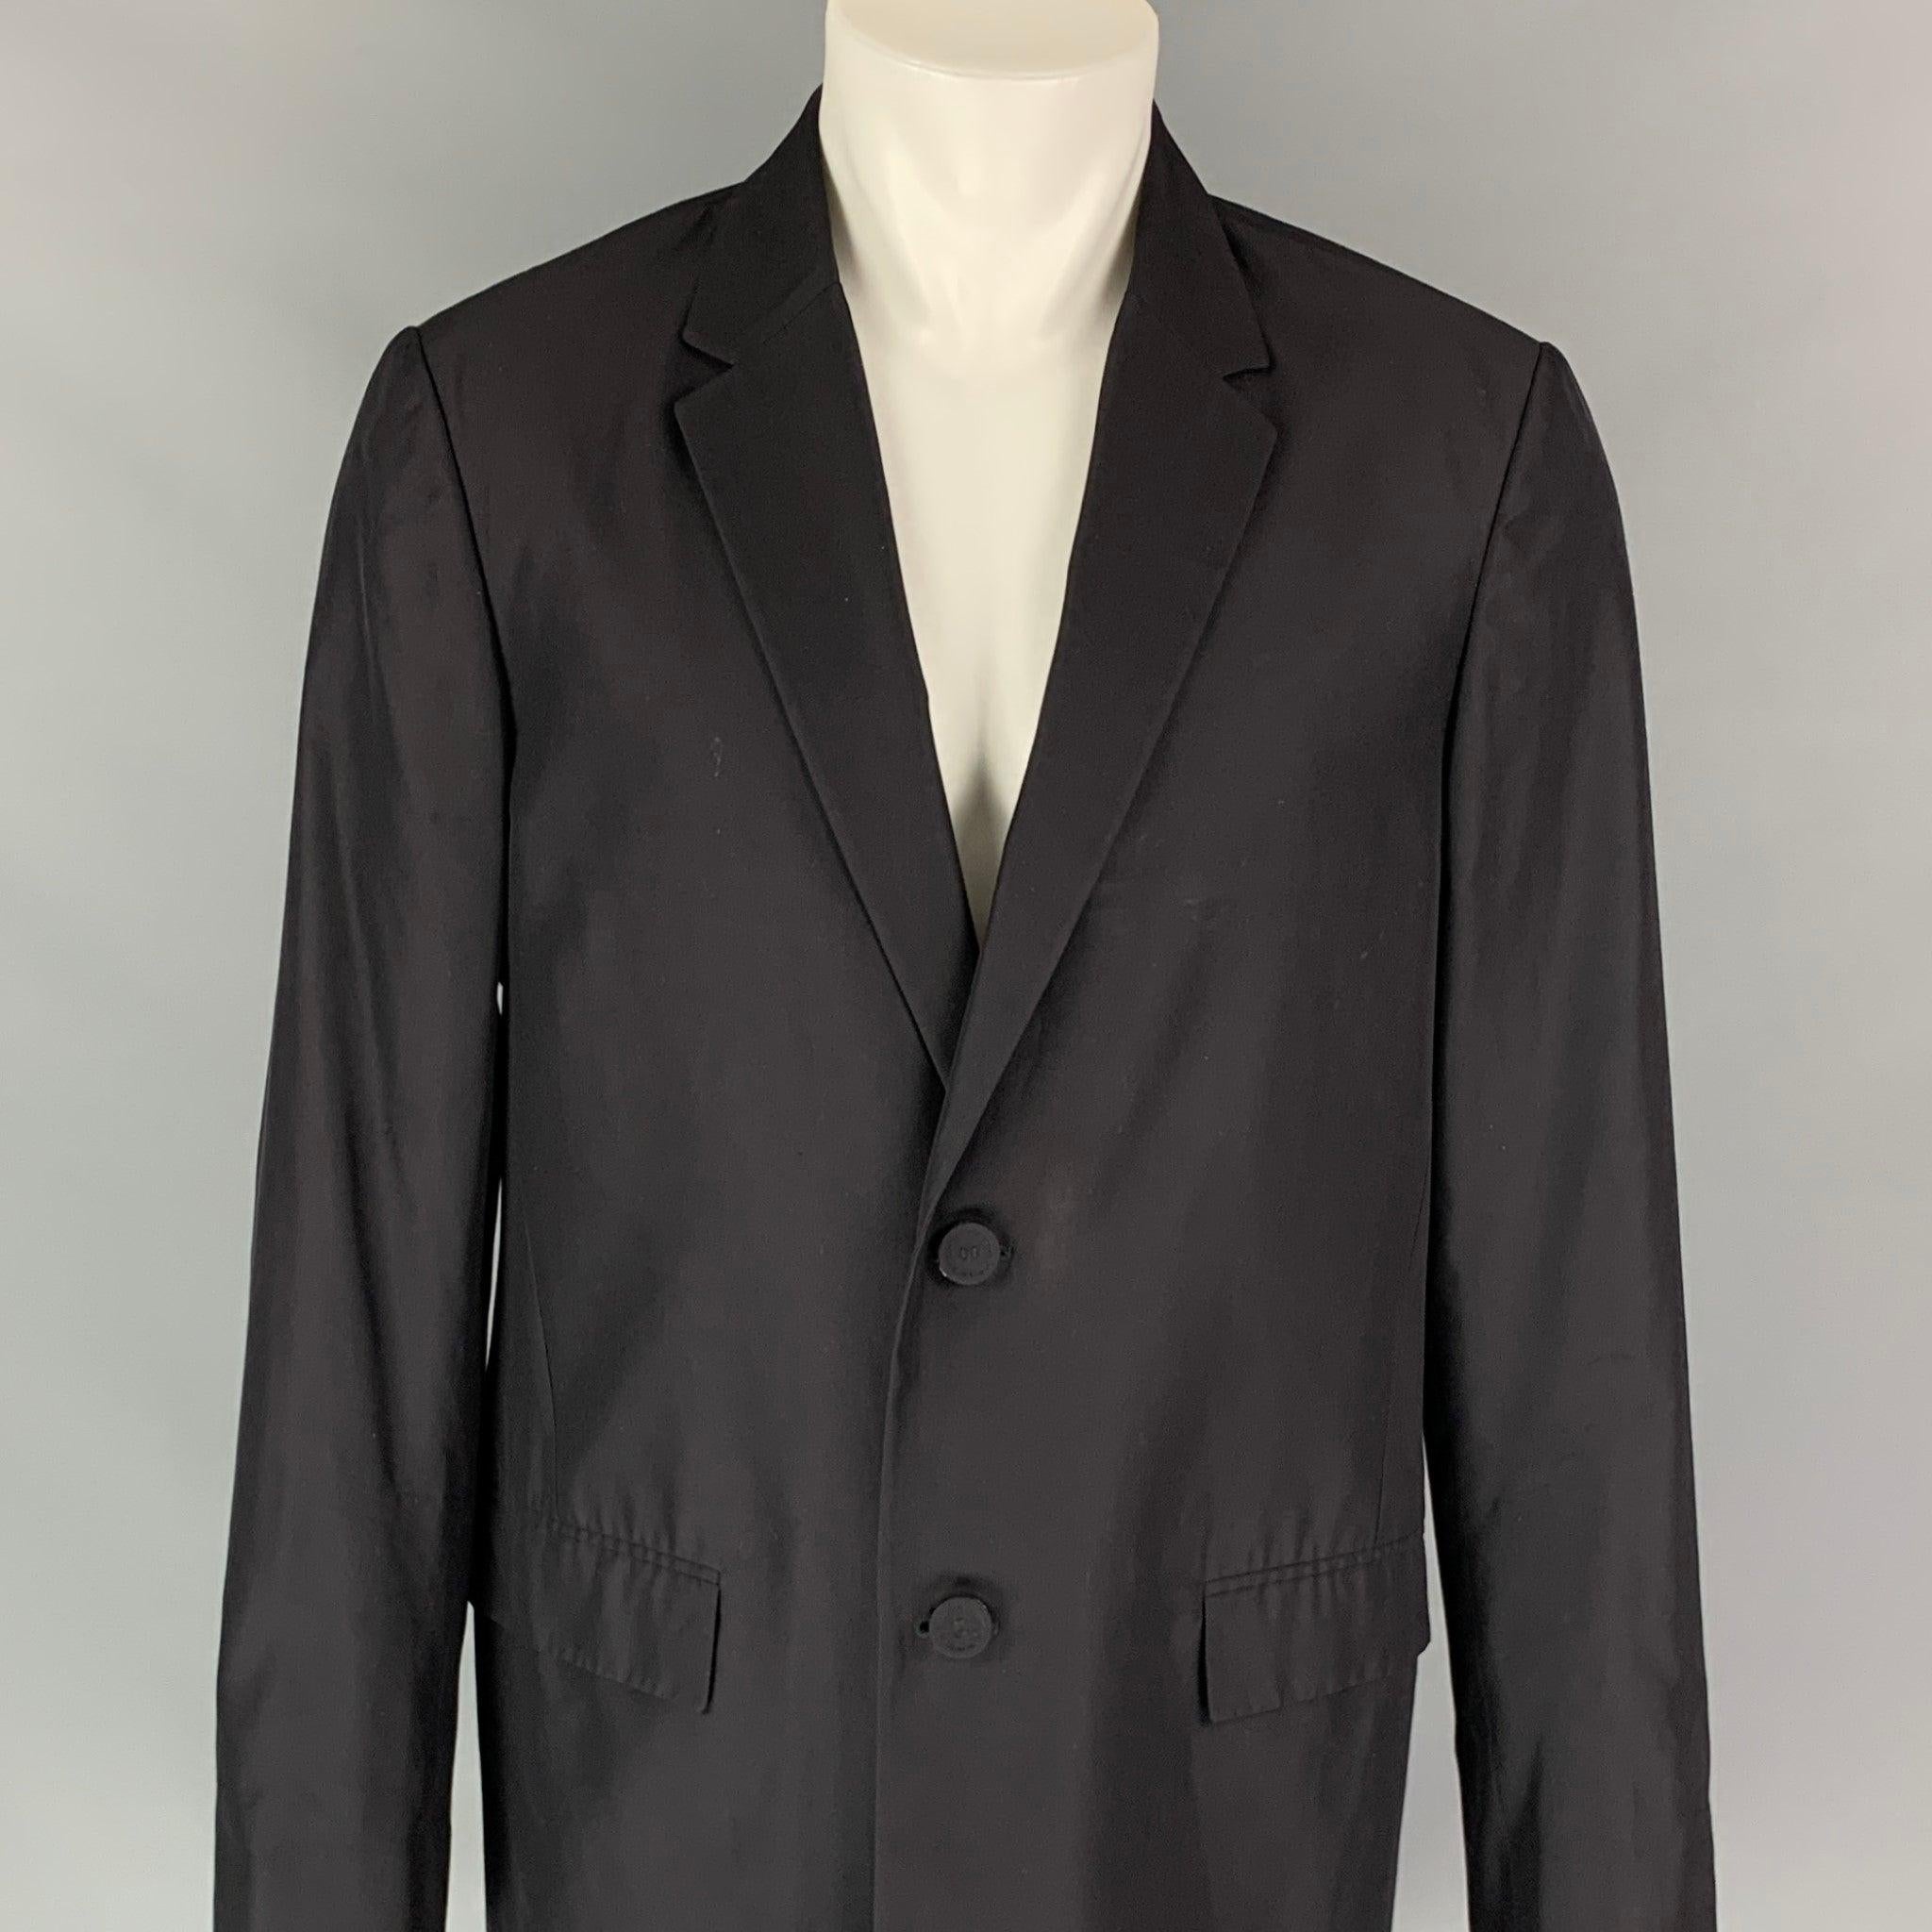 CALVIN KLEIN COLLECTION Mantel aus schwarzer Seide mit eingekerbtem Revers, leichtem Gewicht, Pattentaschen und einem Zwei-Knopf-Verschluss. Hergestellt in Italien.
Sehr guter gebrauchter Zustand. 

Markiert:  48/38 

Abmessungen: 
 
Schultern: 18